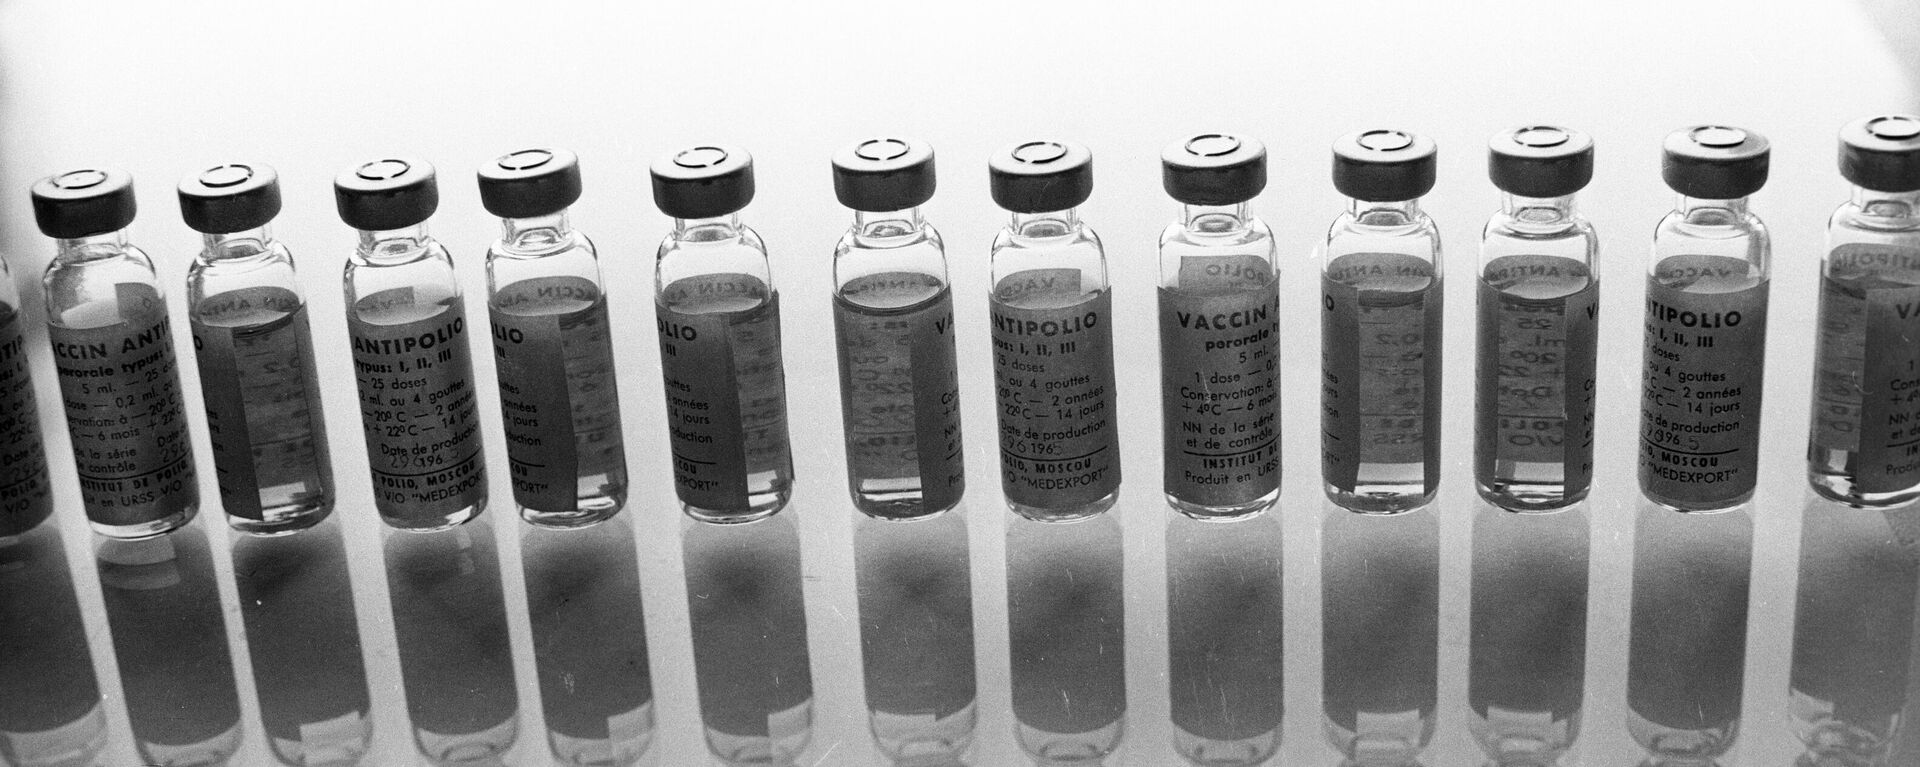 Unos viales de la vacuna contra poliomielitis - Sputnik Mundo, 1920, 22.02.2021